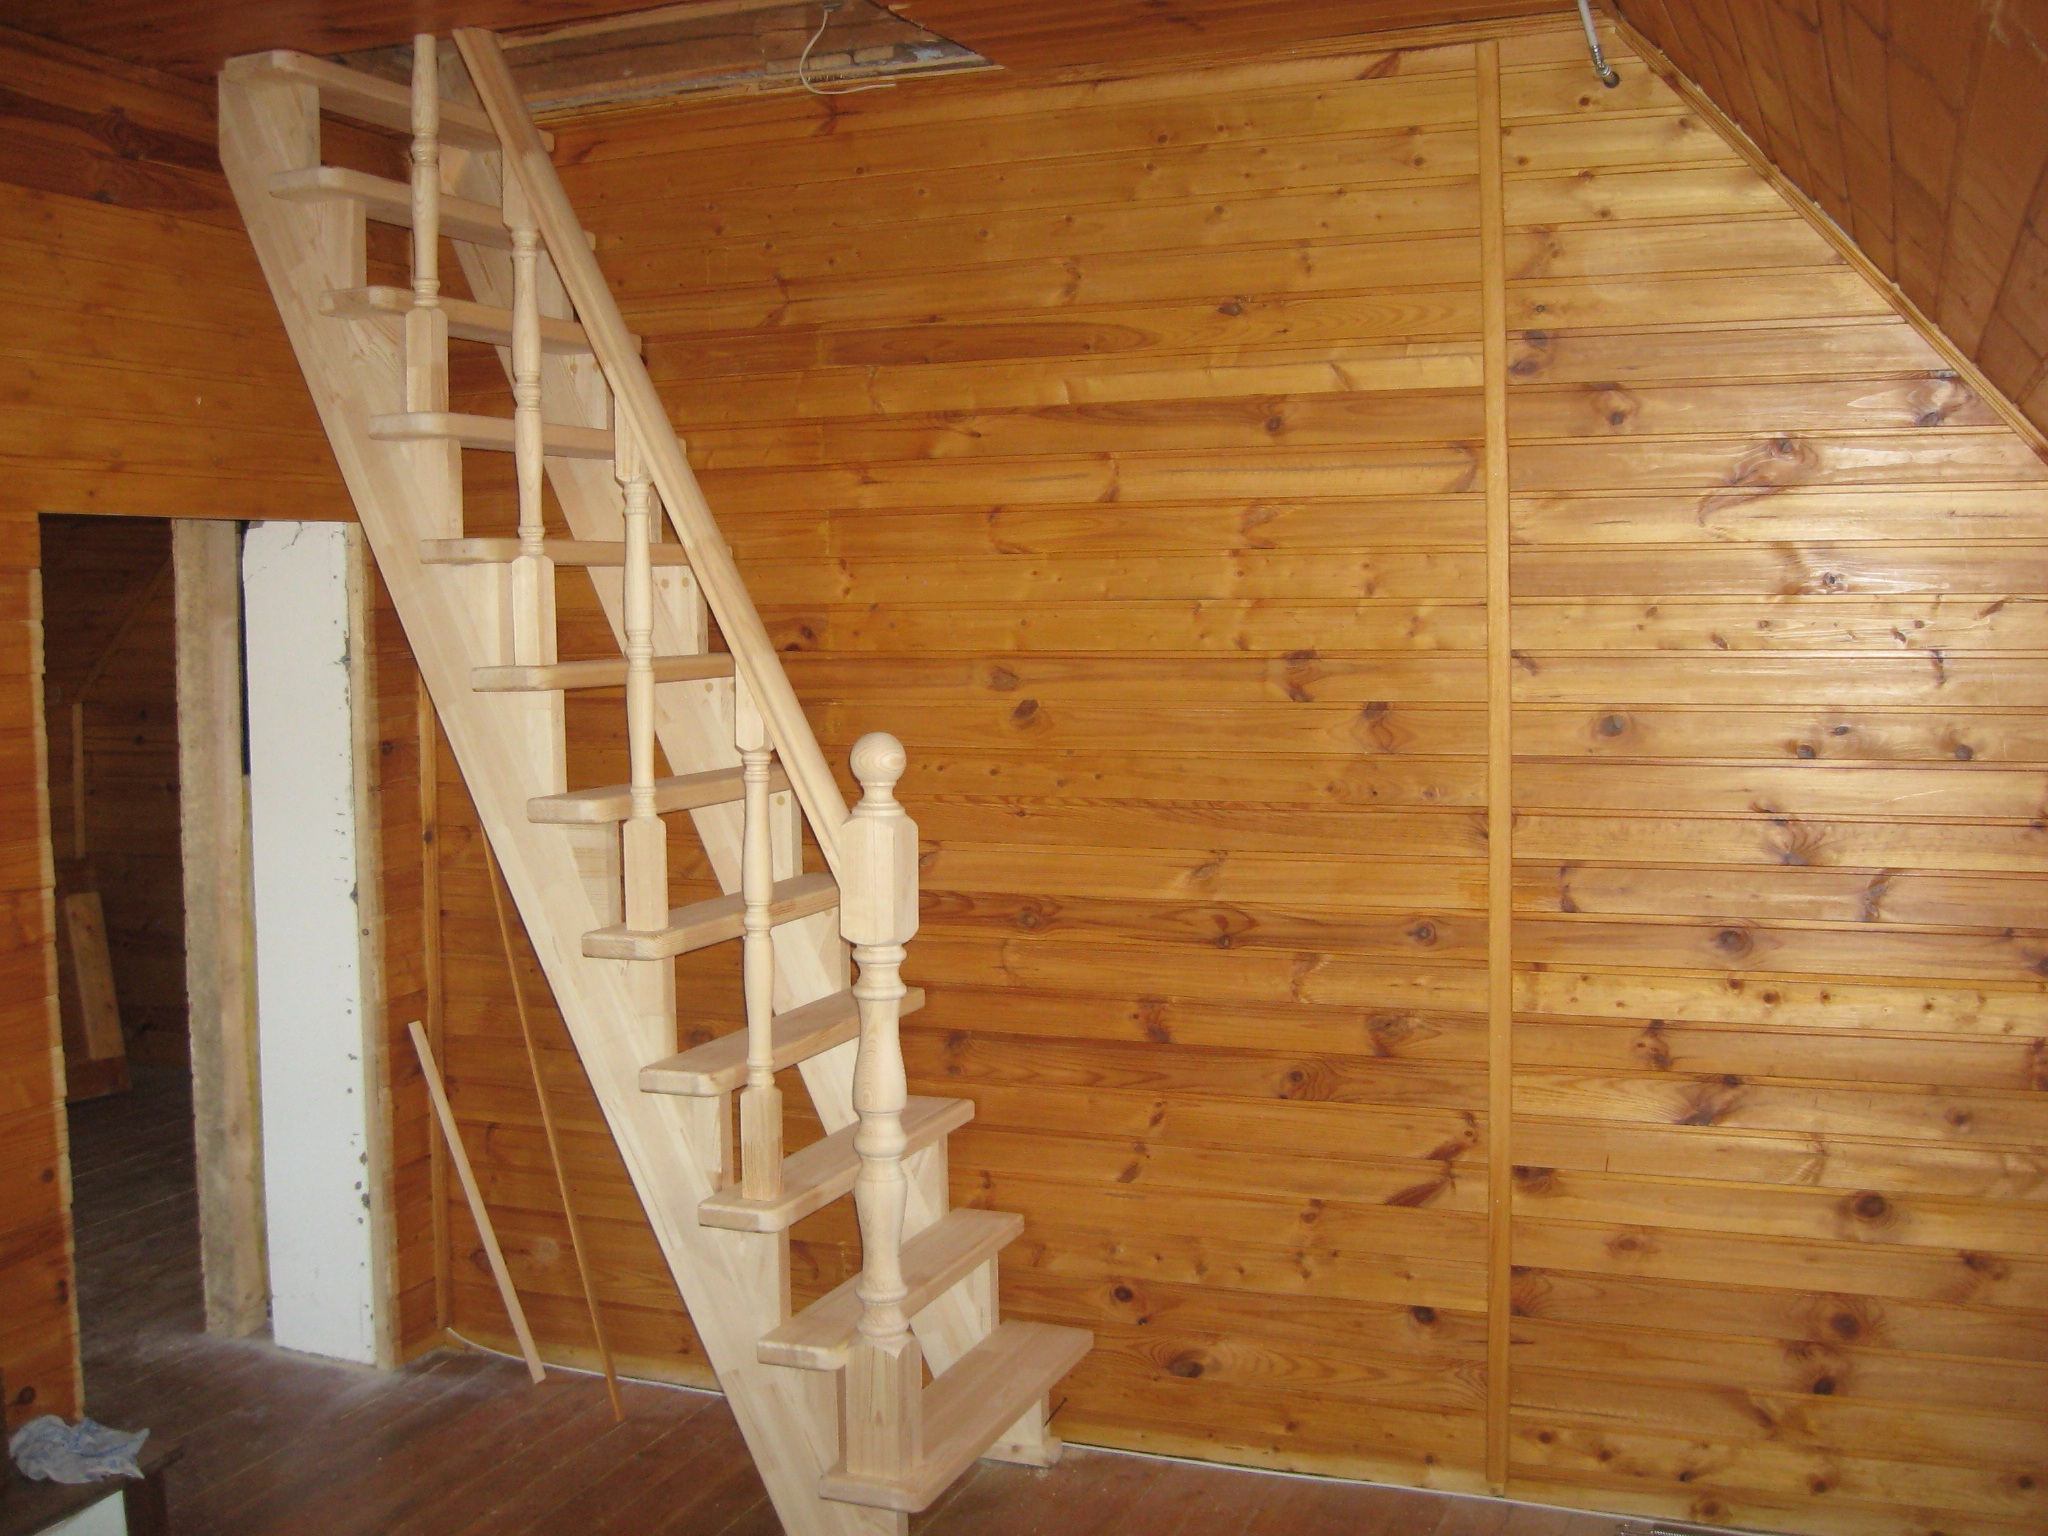 Лестницы на второй этаж в частном доме: размеры, ширина ступеней, оптимальная высота, правила расчета, фото